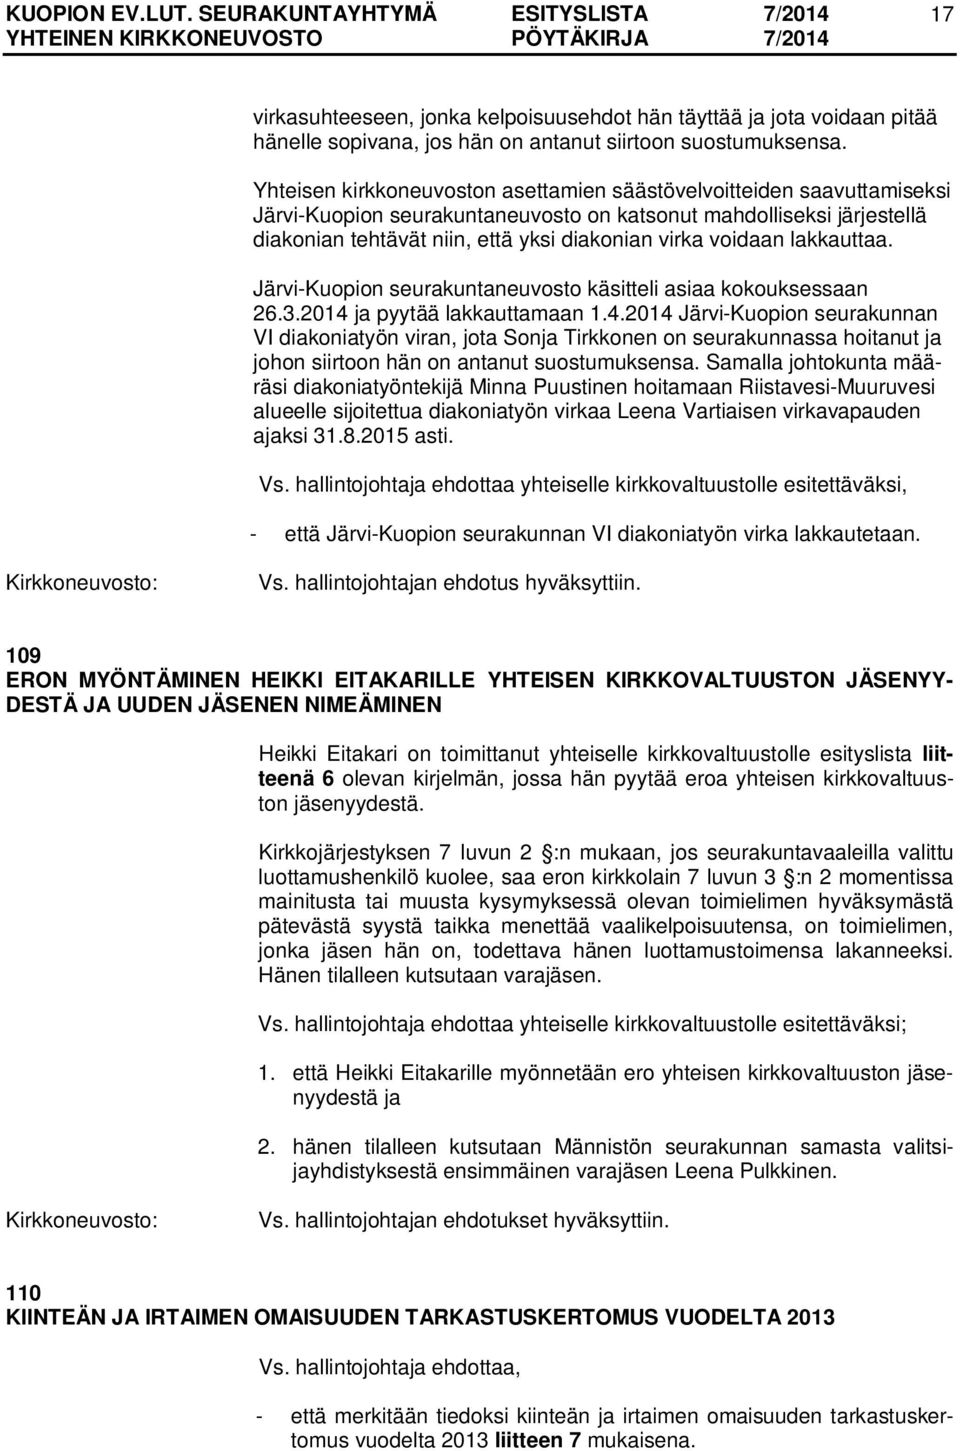 voidaan lakkauttaa. Järvi-Kuopion seurakuntaneuvosto käsitteli asiaa kokouksessaan 26.3.2014 